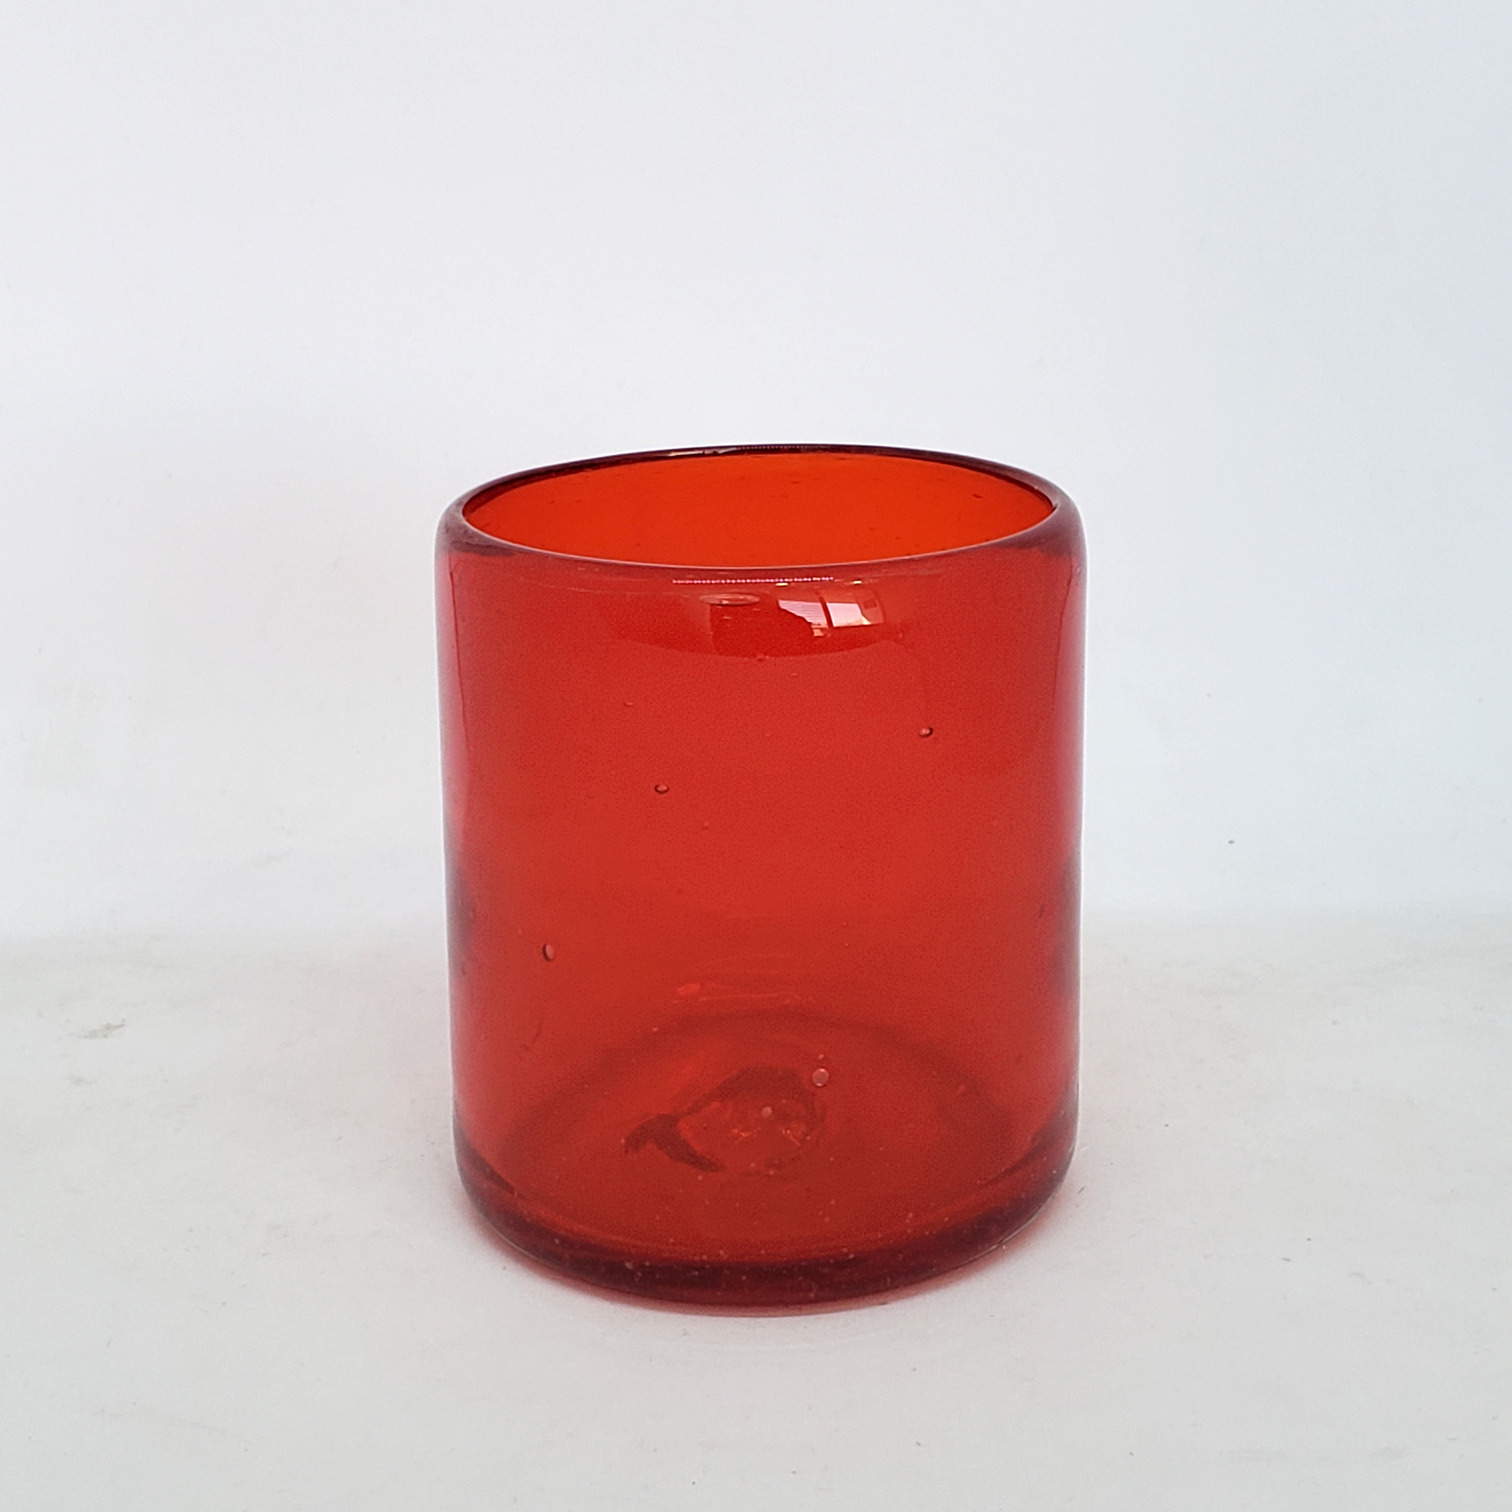 Colores Solidos / Vasos chicos 9 oz color Rojo Sólido (set de 6) / Éstos artesanales vasos le darán un toque colorido a su bebida favorita.